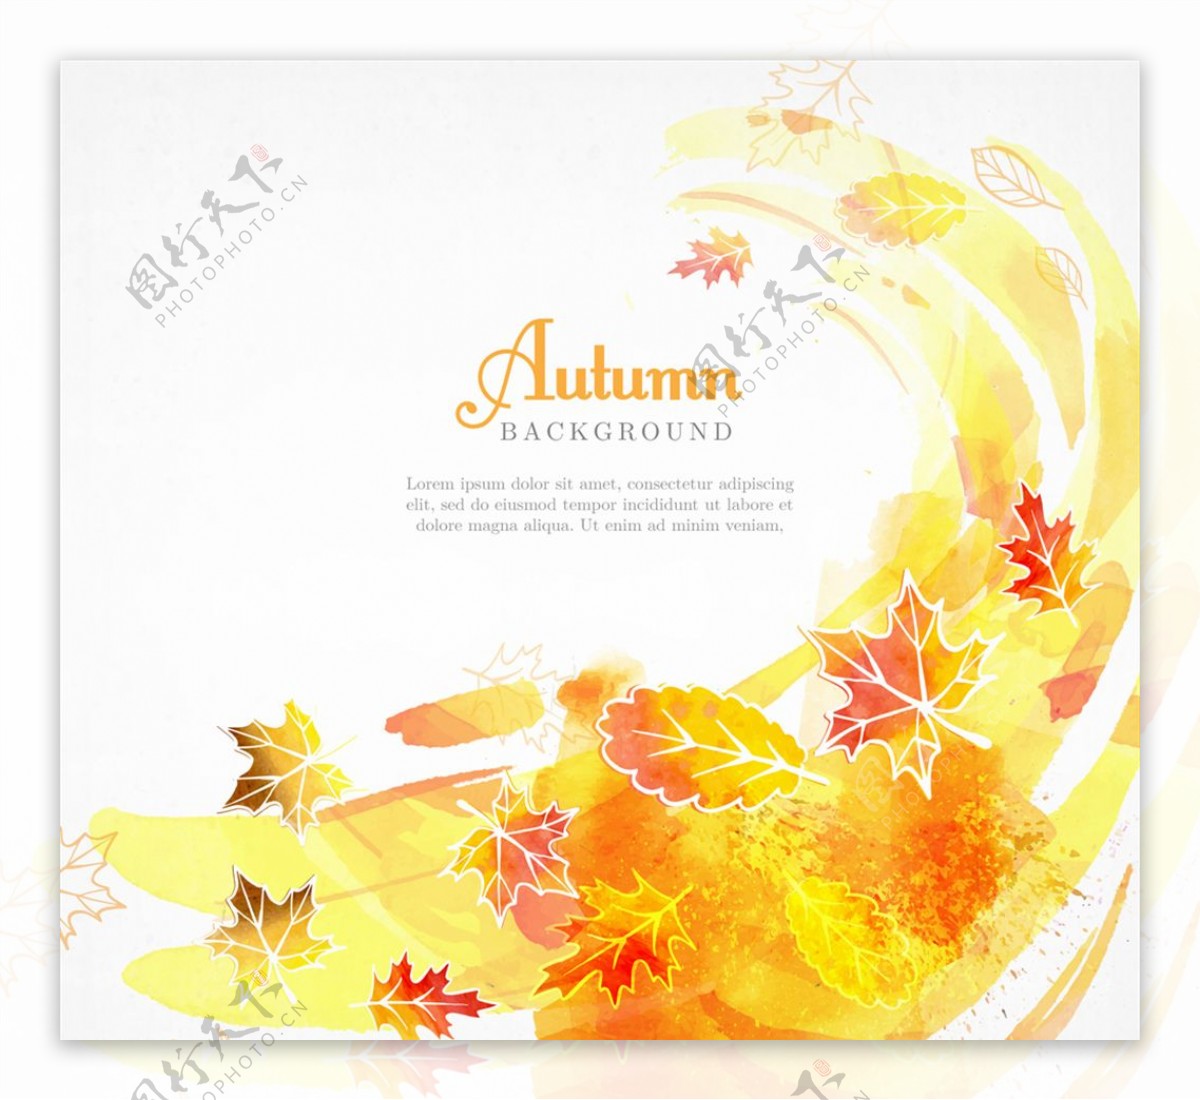 彩绘秋季风和树叶矢量素材